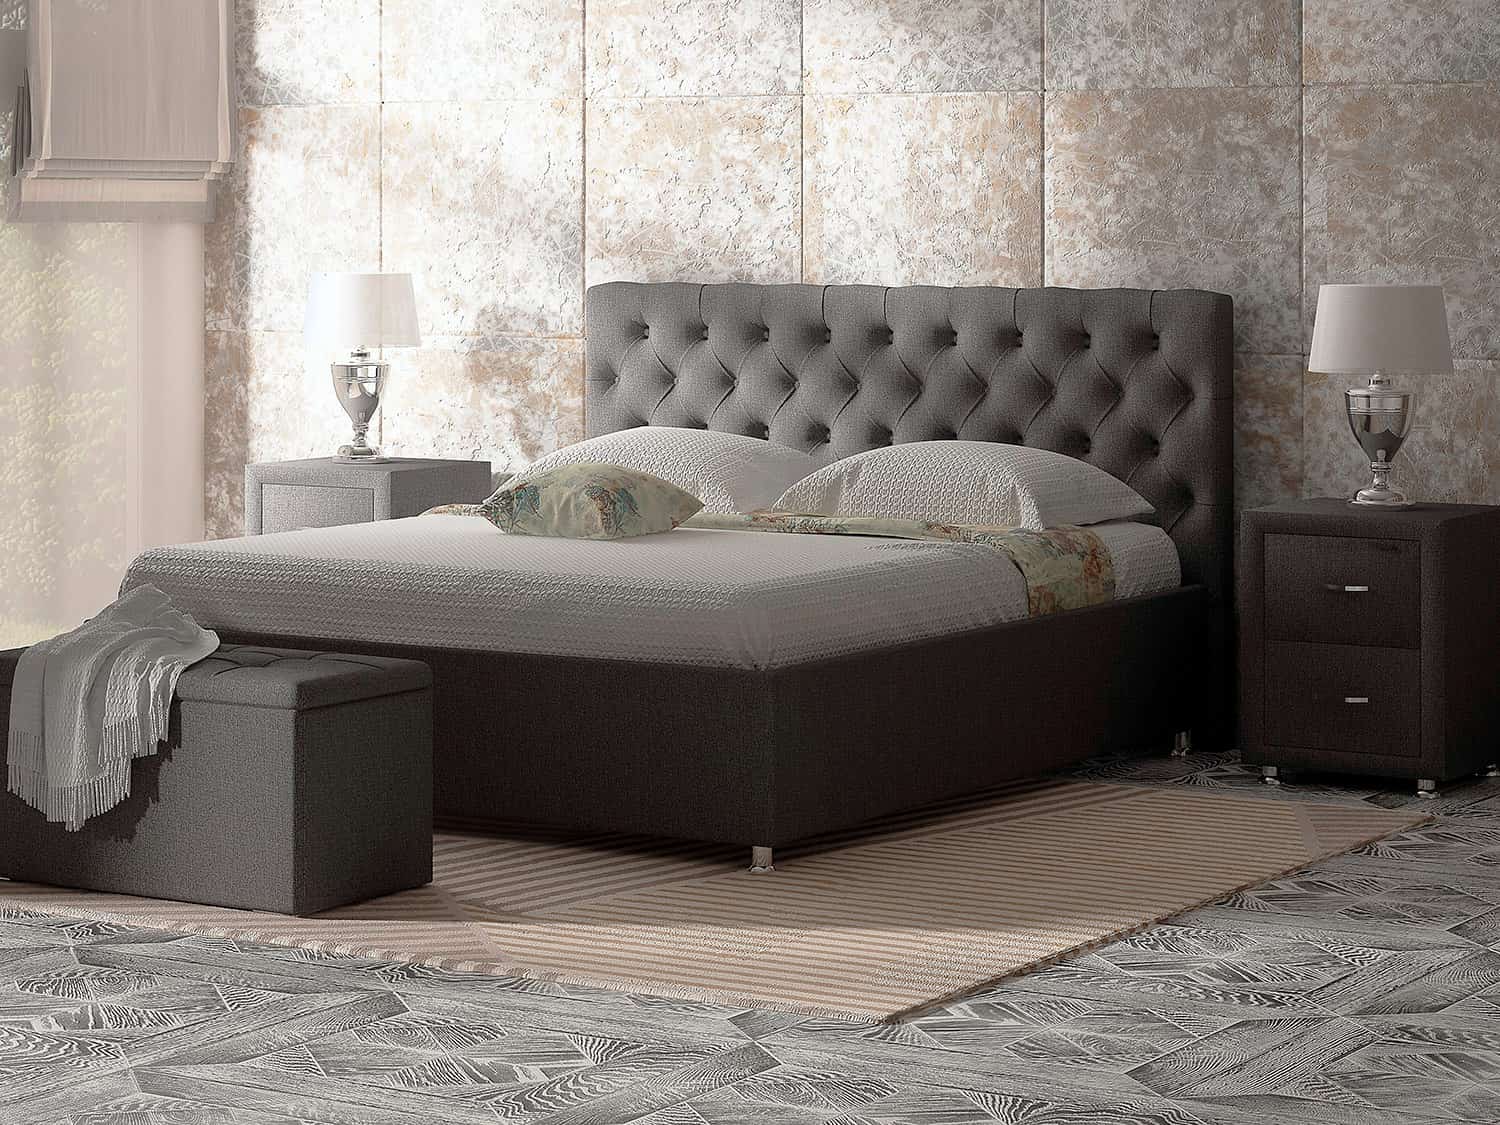 Кровать Parma - кровать с подъемным механизмом и высоким изголовьем (каретная стяжка)